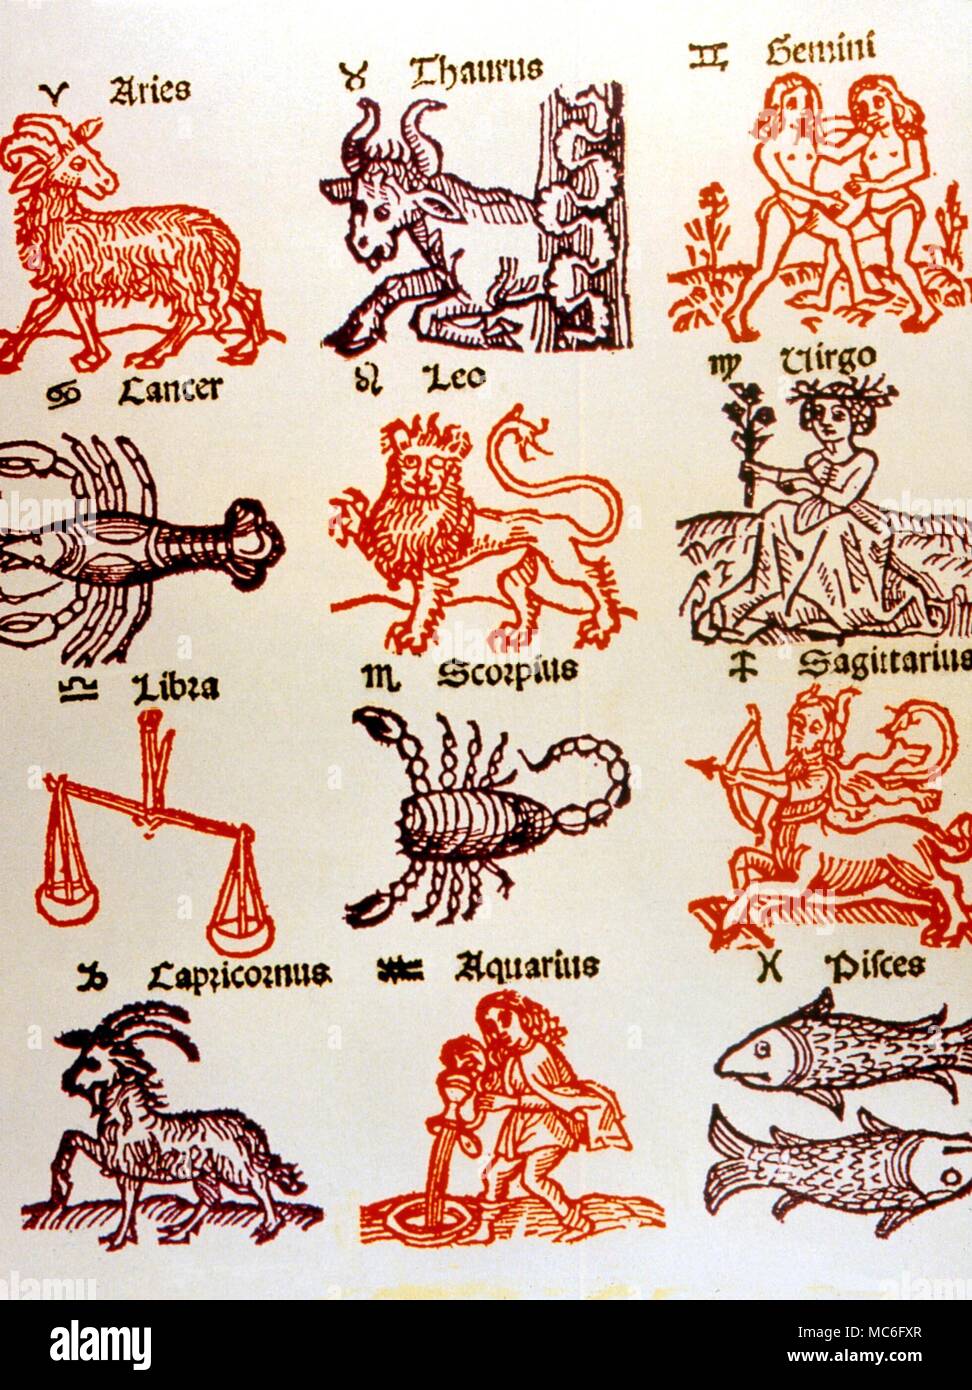 Cachets astrologique - images des douze signes, avec leurs cachets. À partir de l'édition 1489 de la traduction en arabe, 'Astrorum Scientia'. Banque D'Images